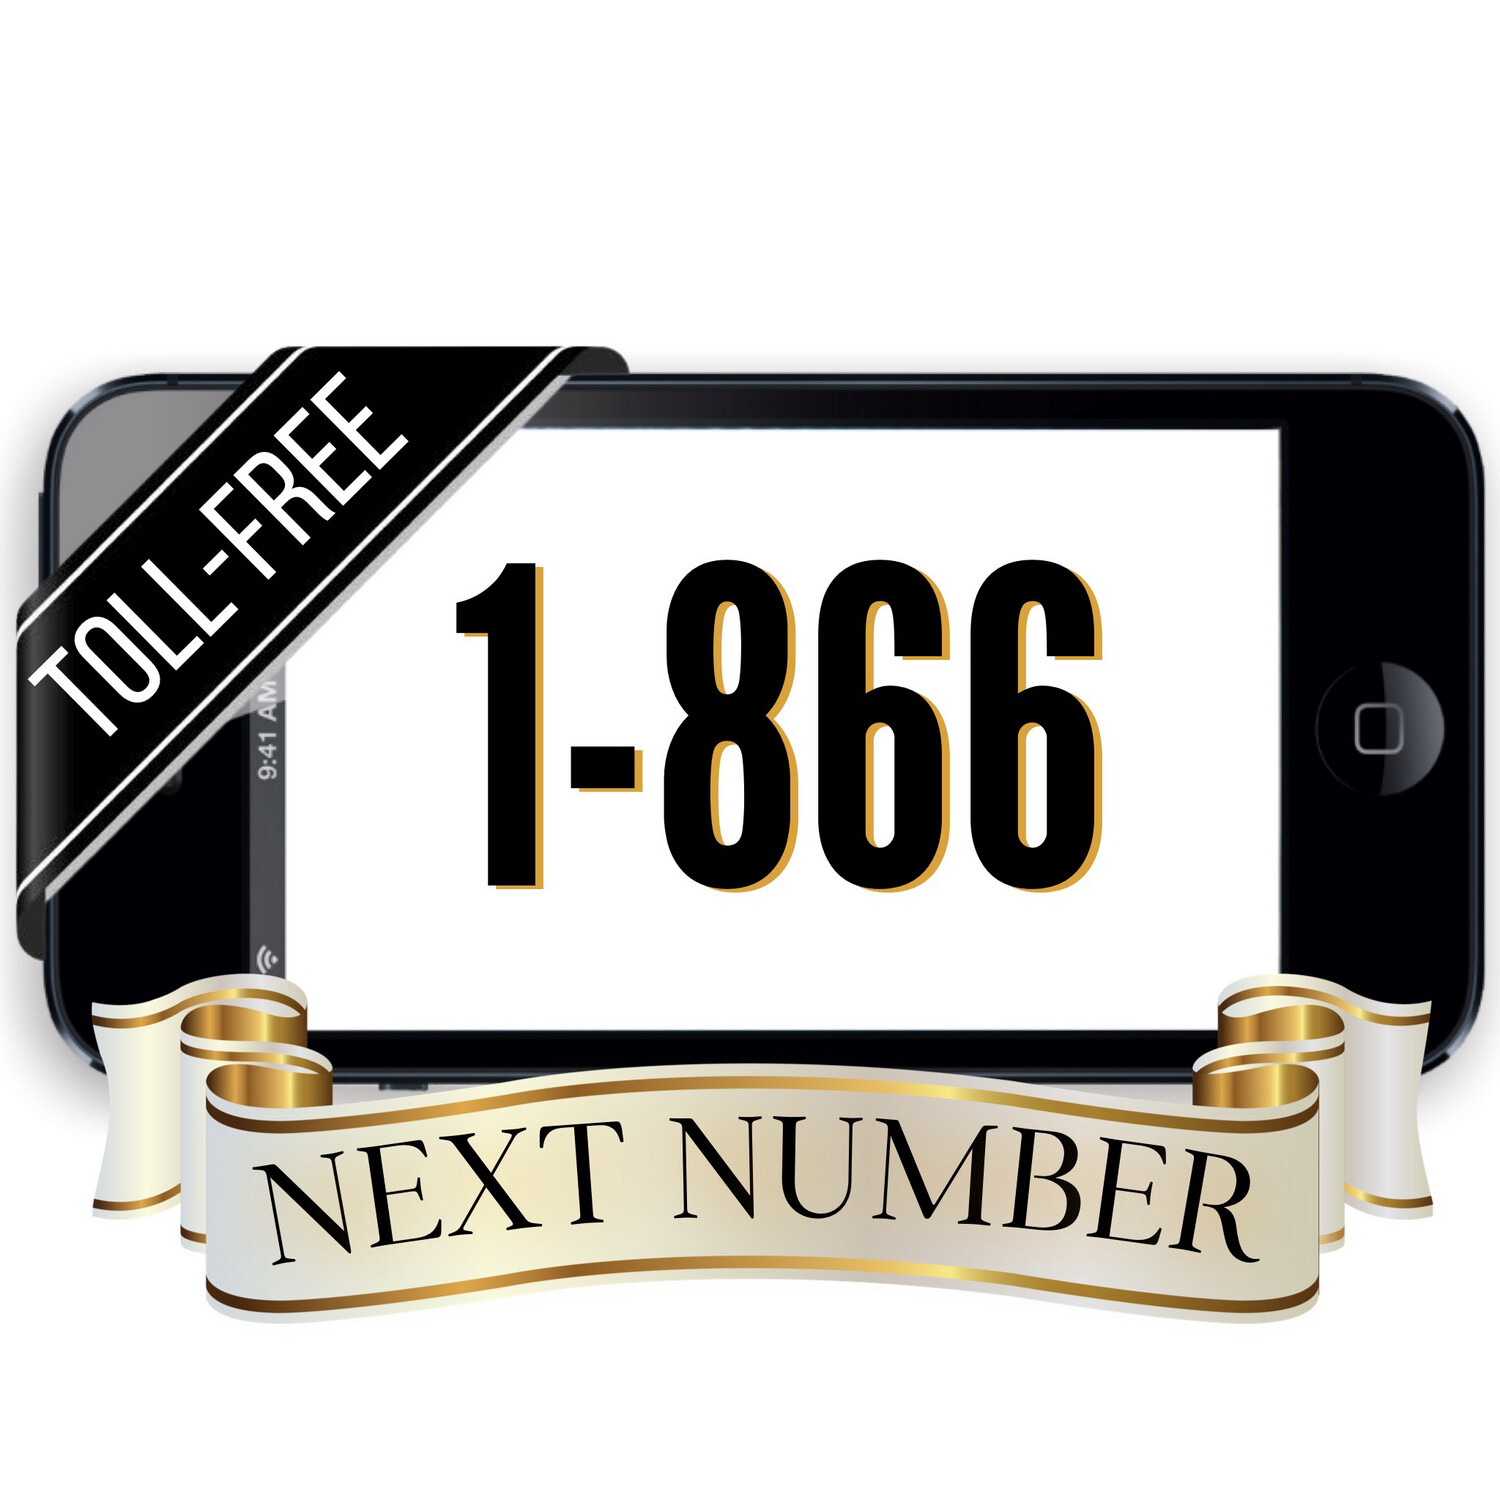 Next 1-866 Number